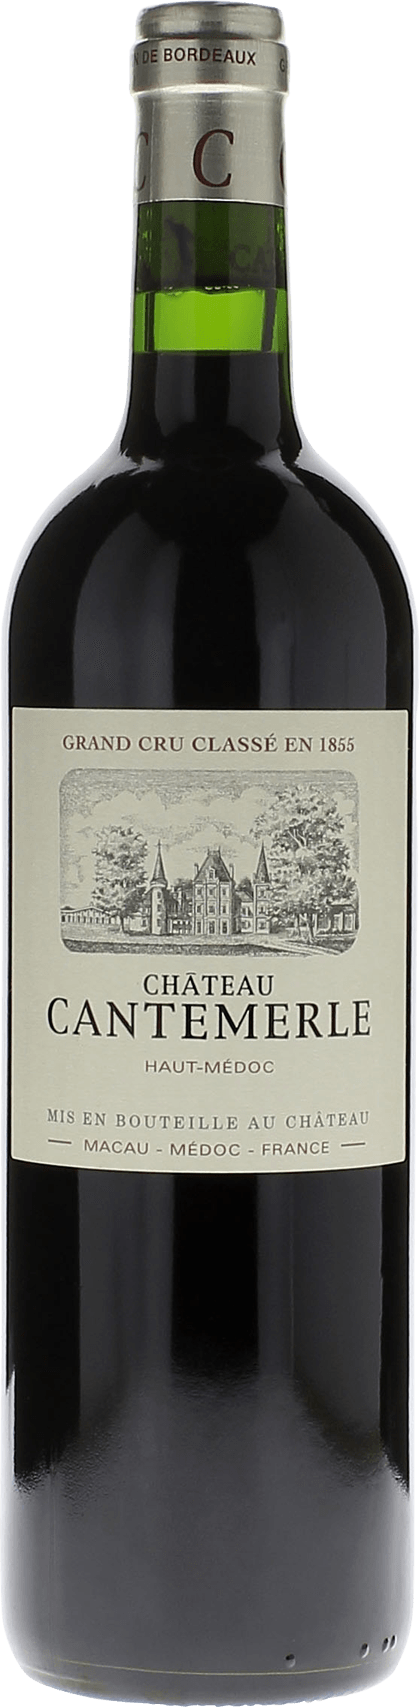 Cantemerle 2016 5me Grand cru class Haut-Mdoc, Bordeaux rouge